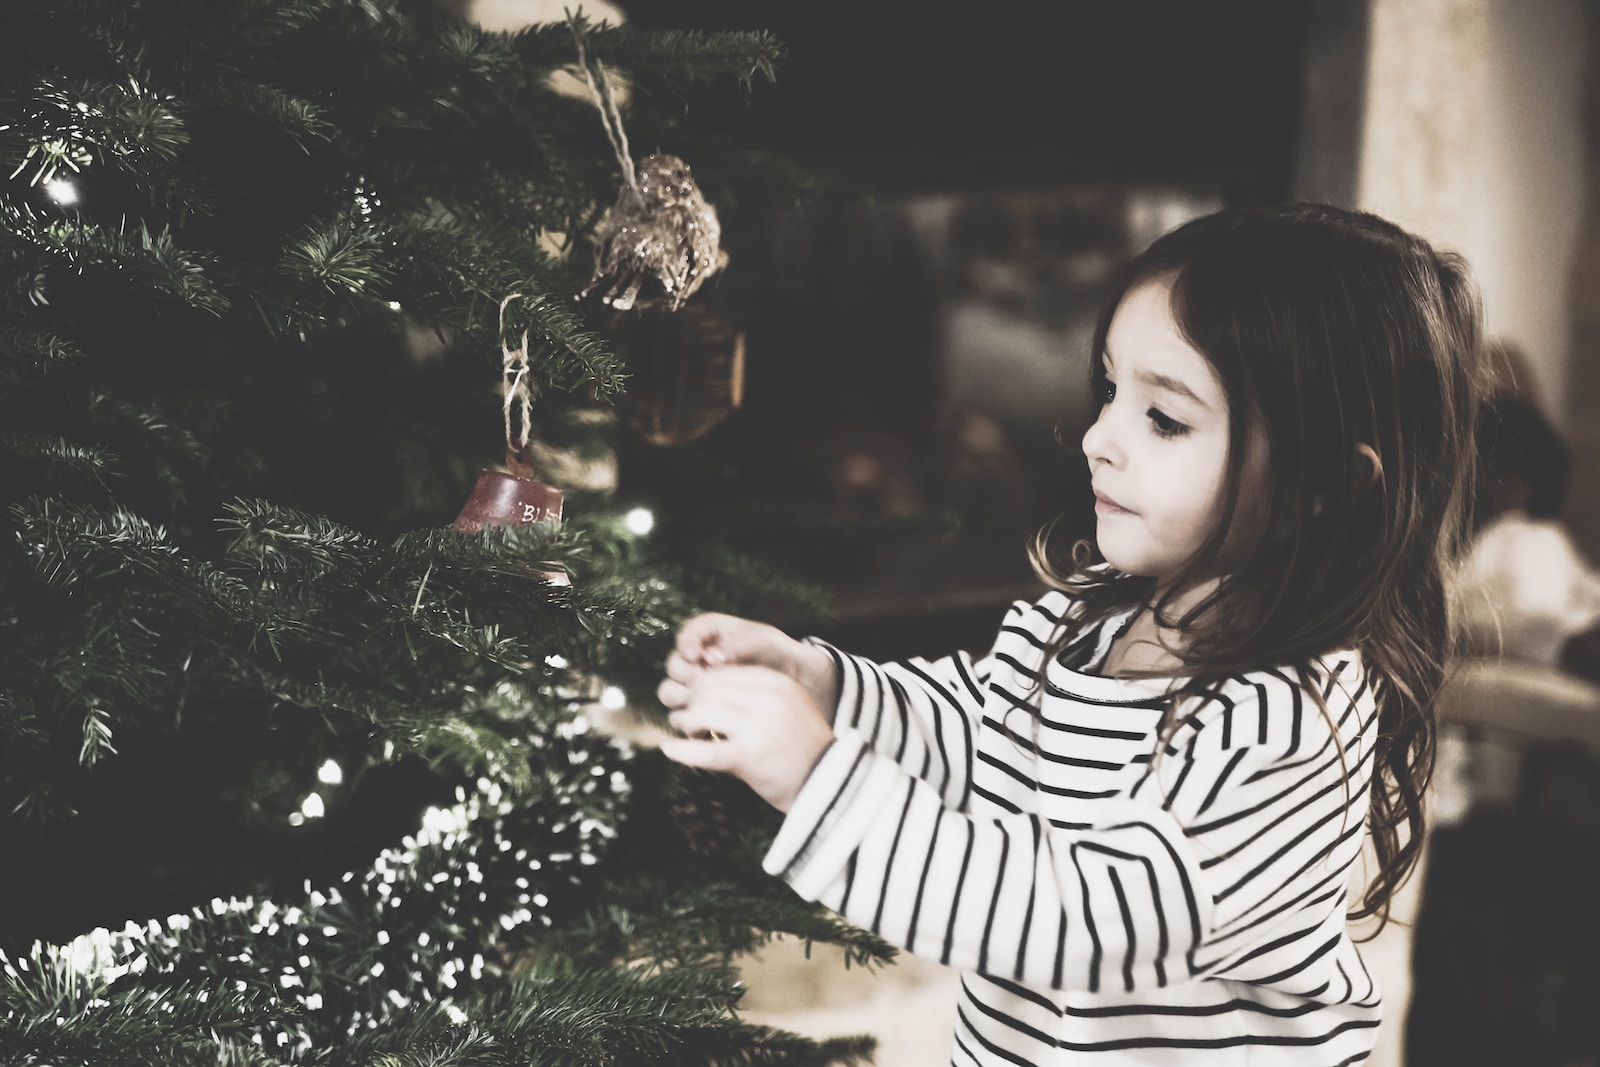 bedste julegaver til børn, gaveide til børn, børn skal have oplevelser i gave og ikke ipads